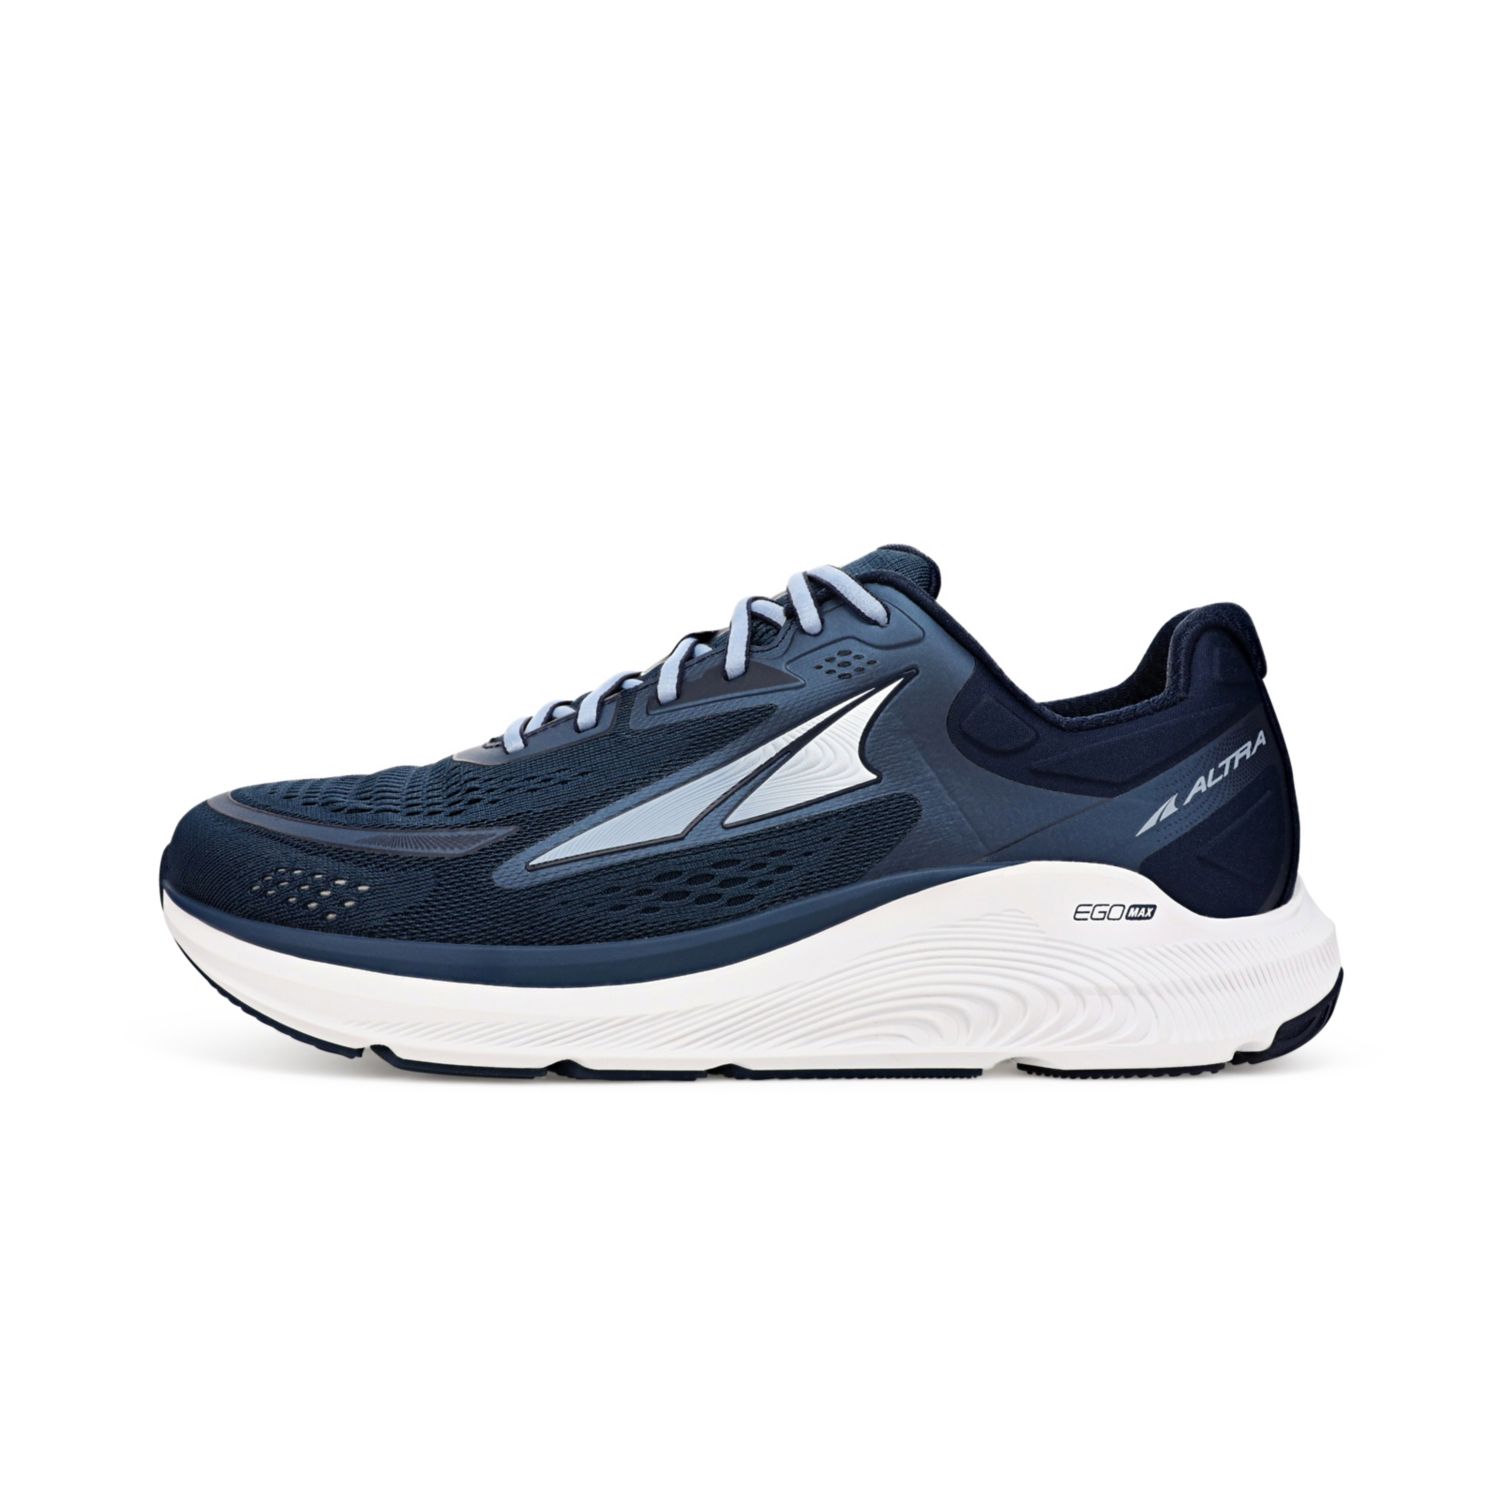 Navy / Light Blue Altra Paradigm 6 Men's Road Running Shoes | Ireland-38192509